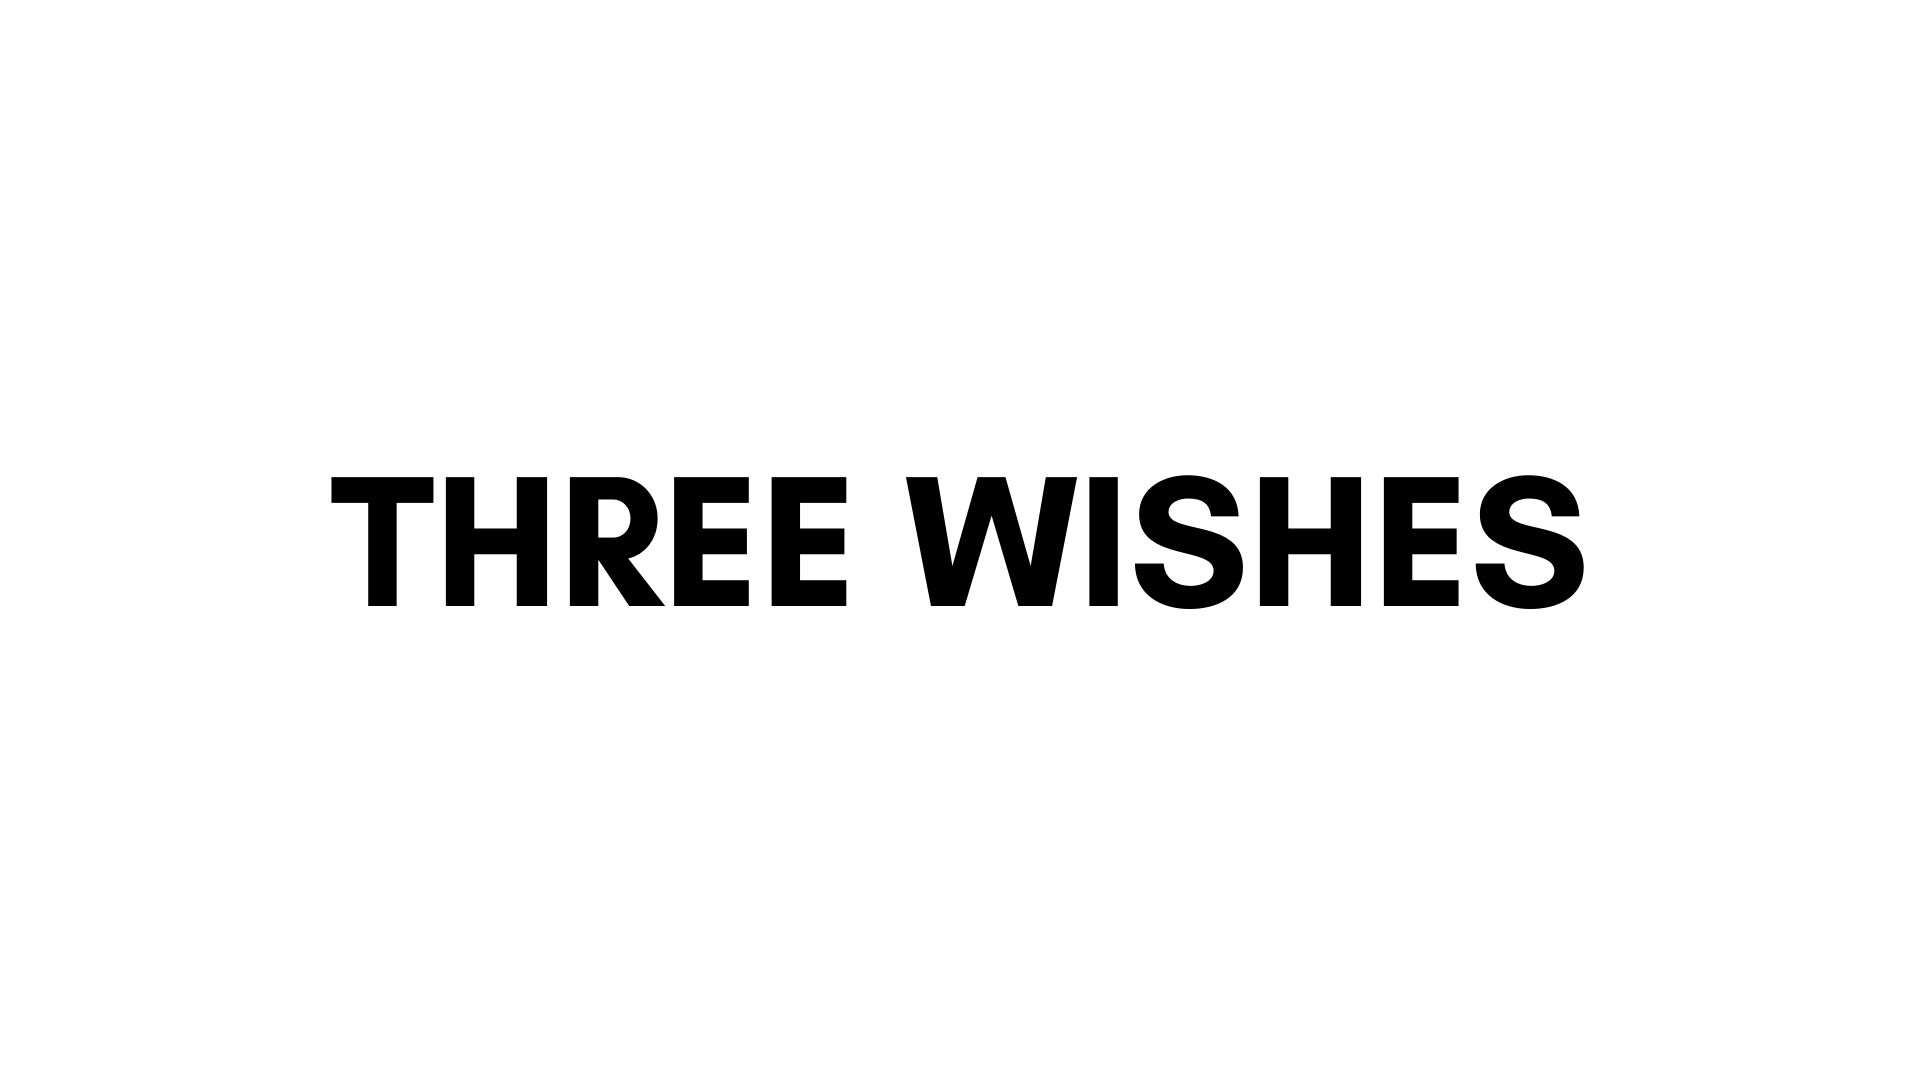 THREE WISHES